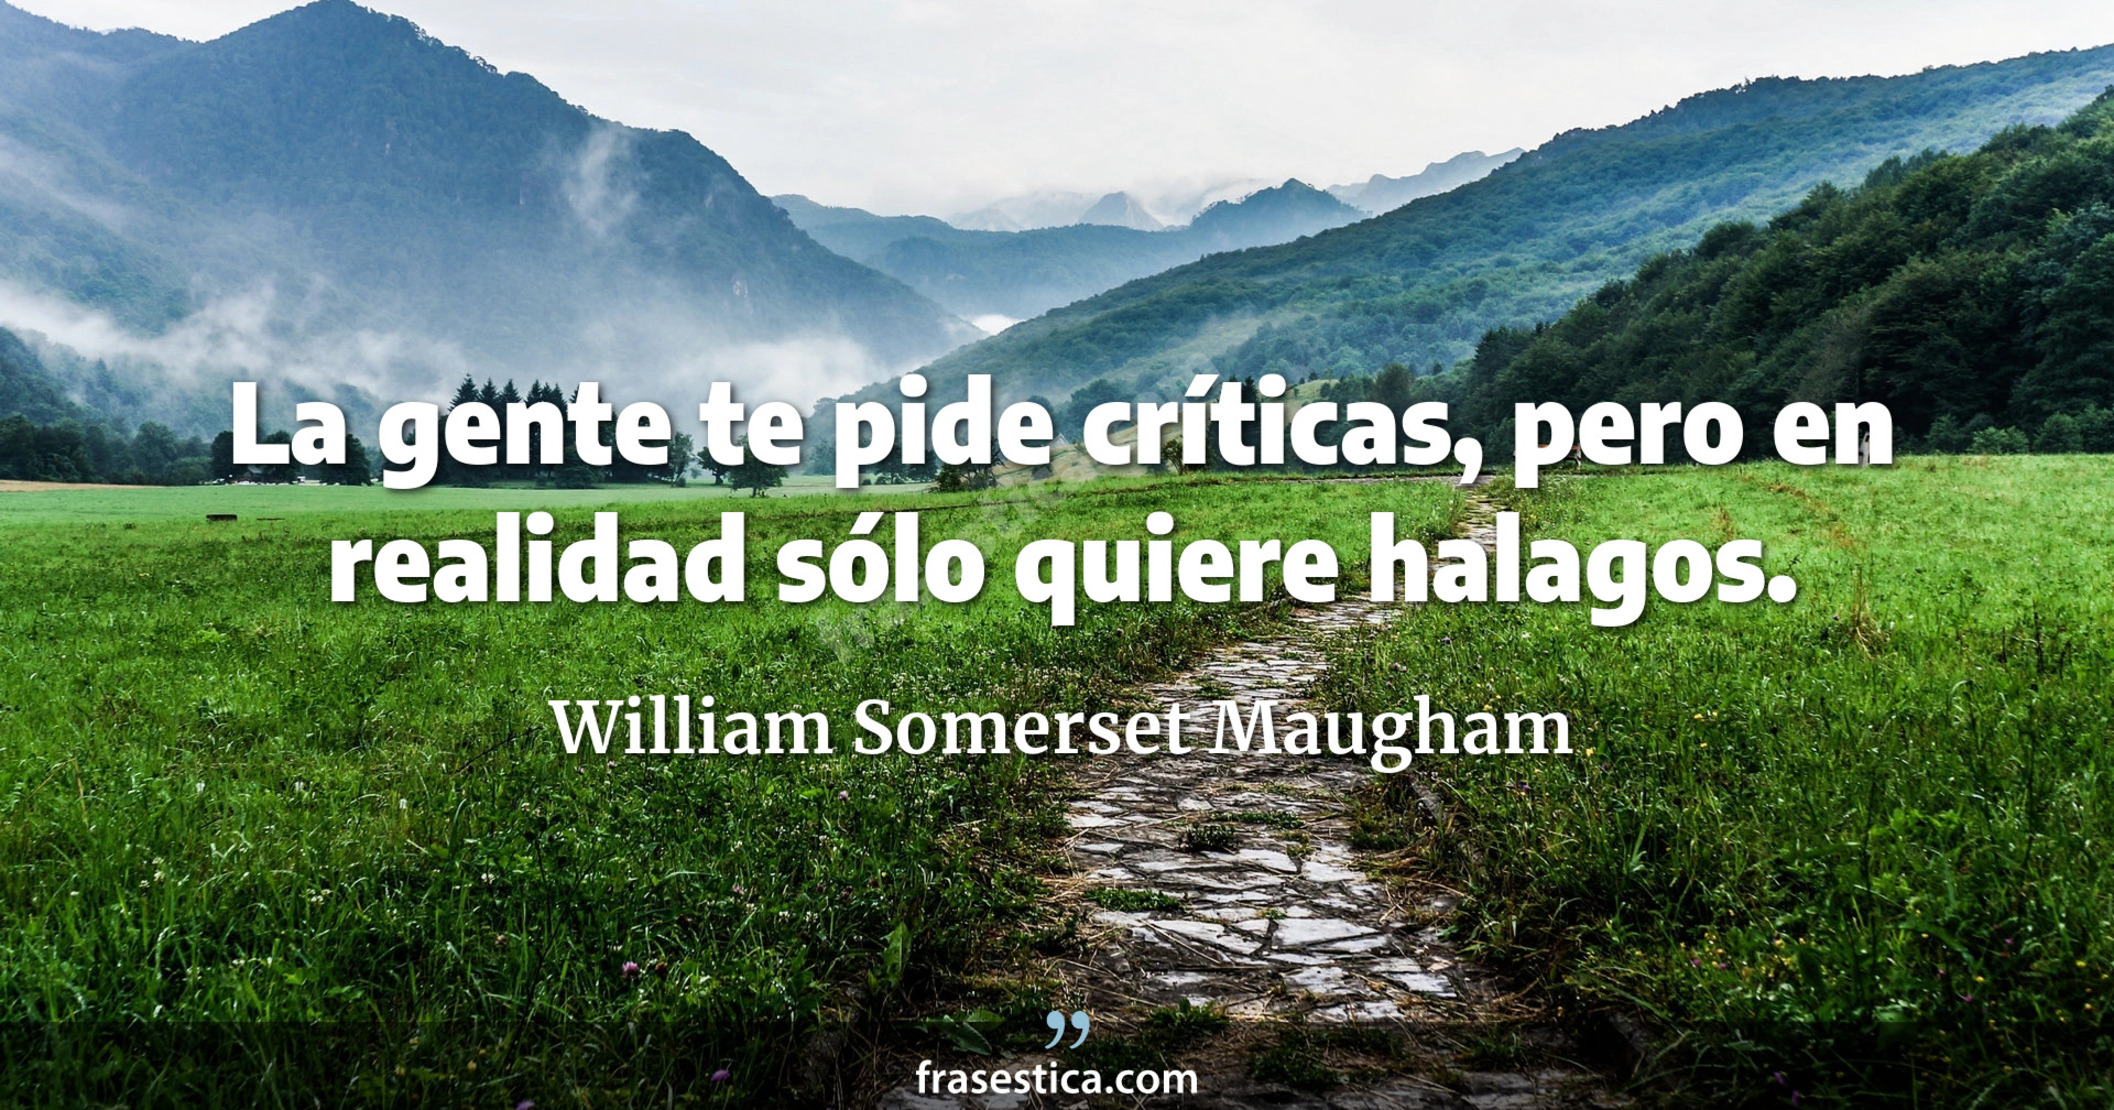 La gente te pide críticas, pero en realidad sólo quiere halagos. - William Somerset Maugham